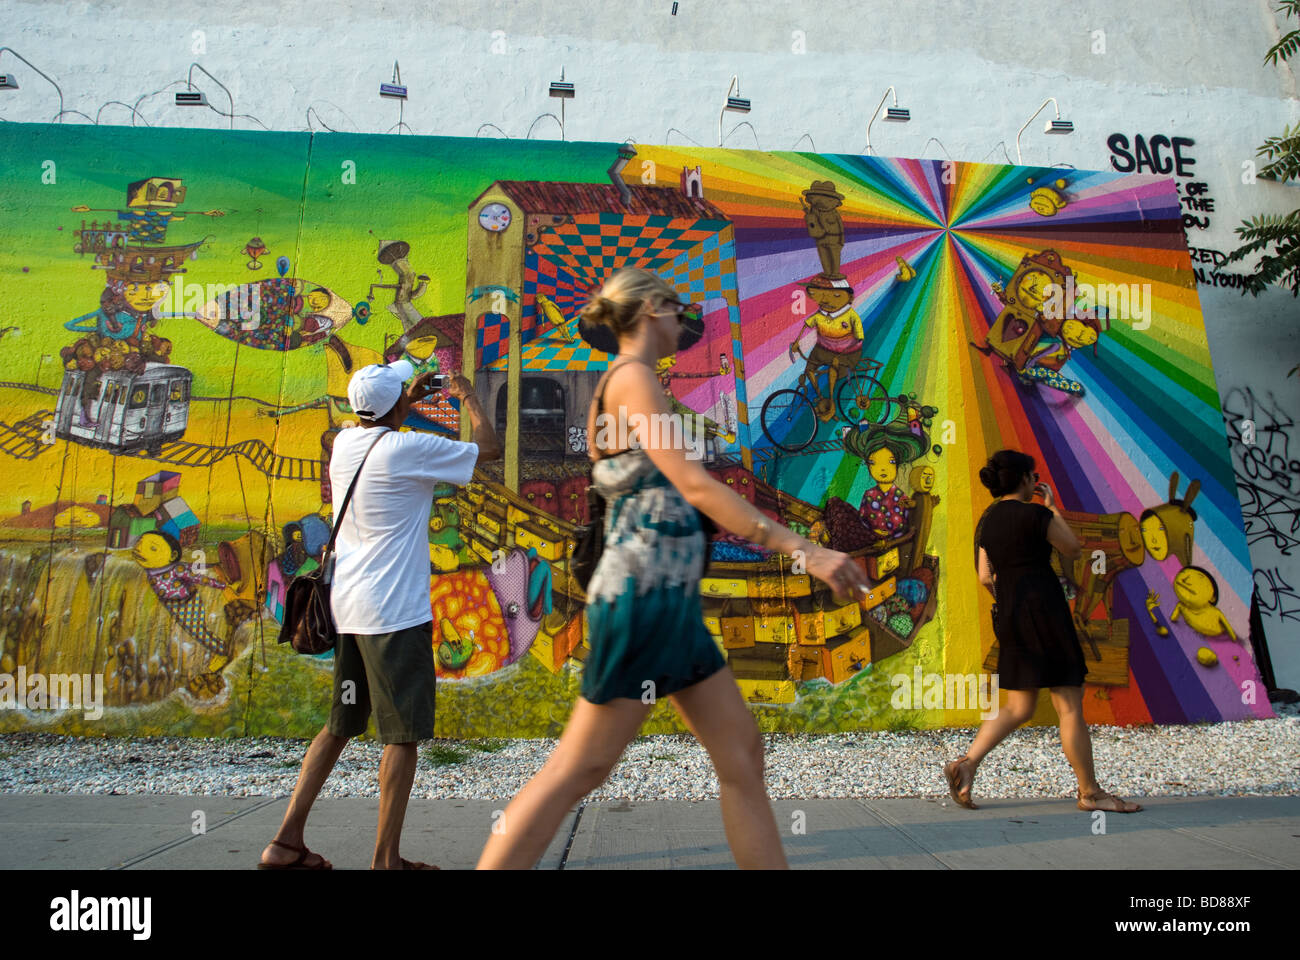 Passanten beobachten oder ein Wandbild von der brasilianischen Graffiti-Künstlern Os Gémeos in New York zu ignorieren Stockfoto